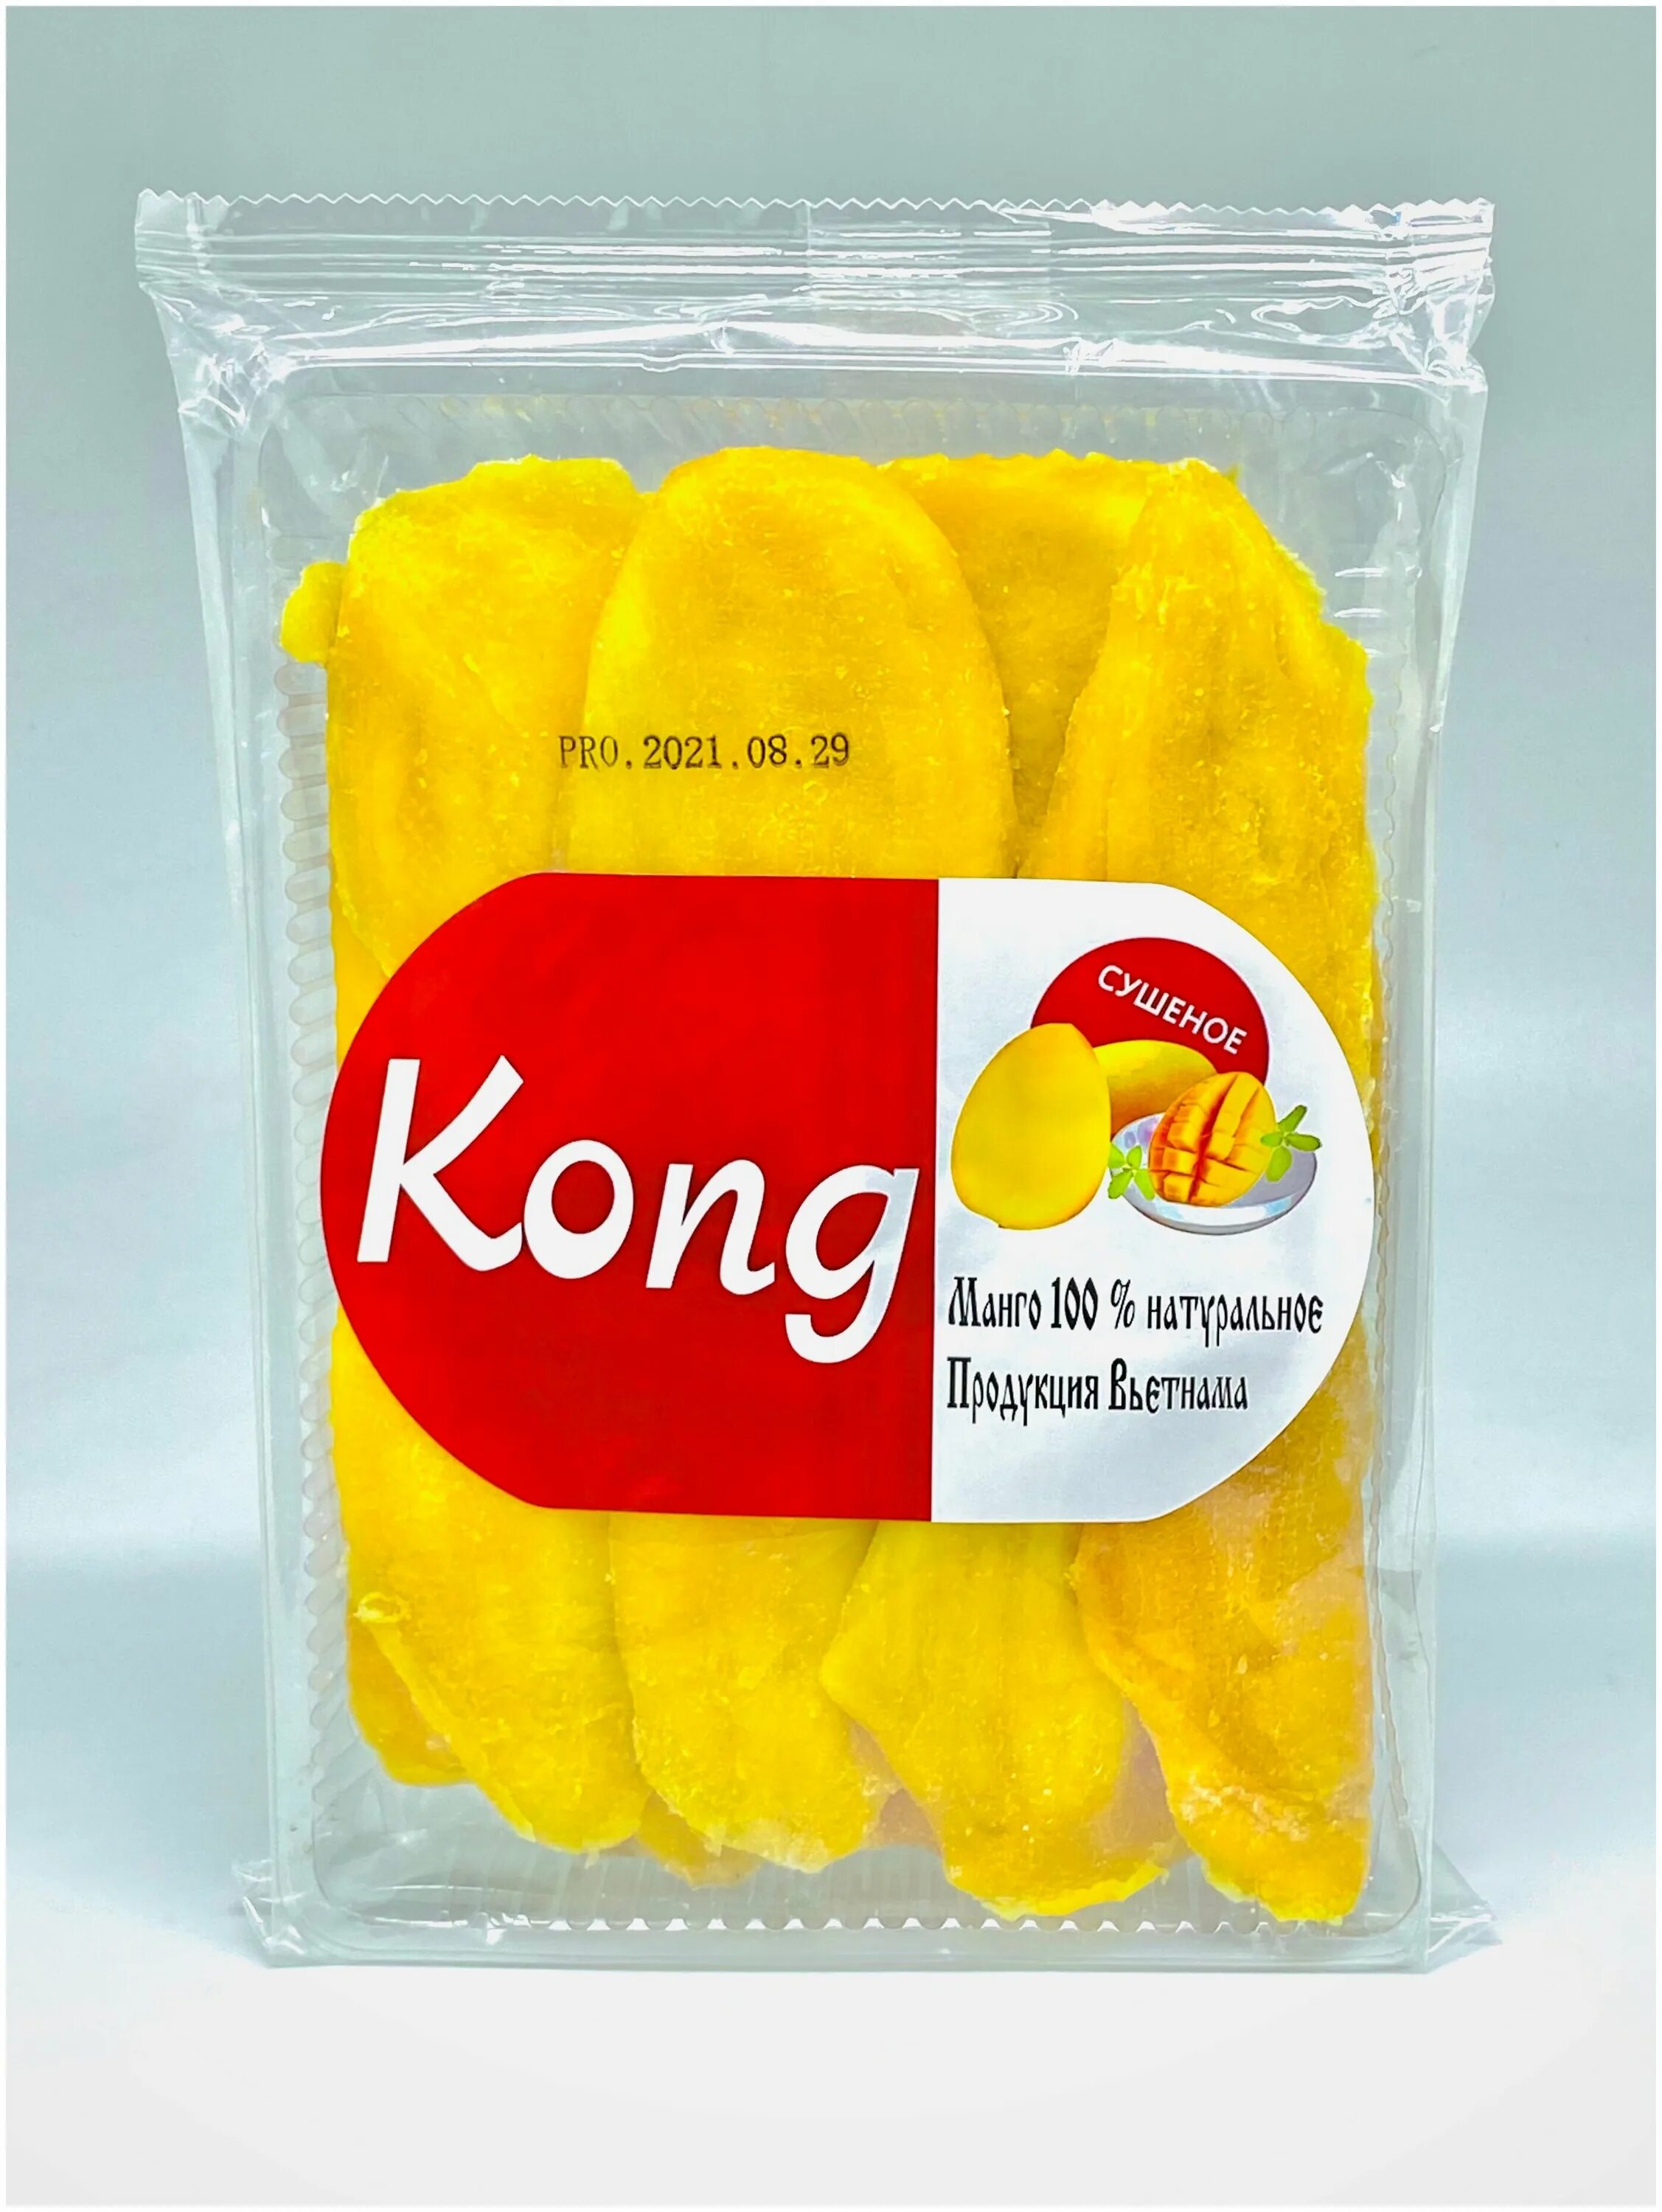 Манго сушеное Конг. Манго Kong 500г. Манго сушеное Конг 500 гр. Манго натуральное сушеное 500 г. Сколько стоит кг манго